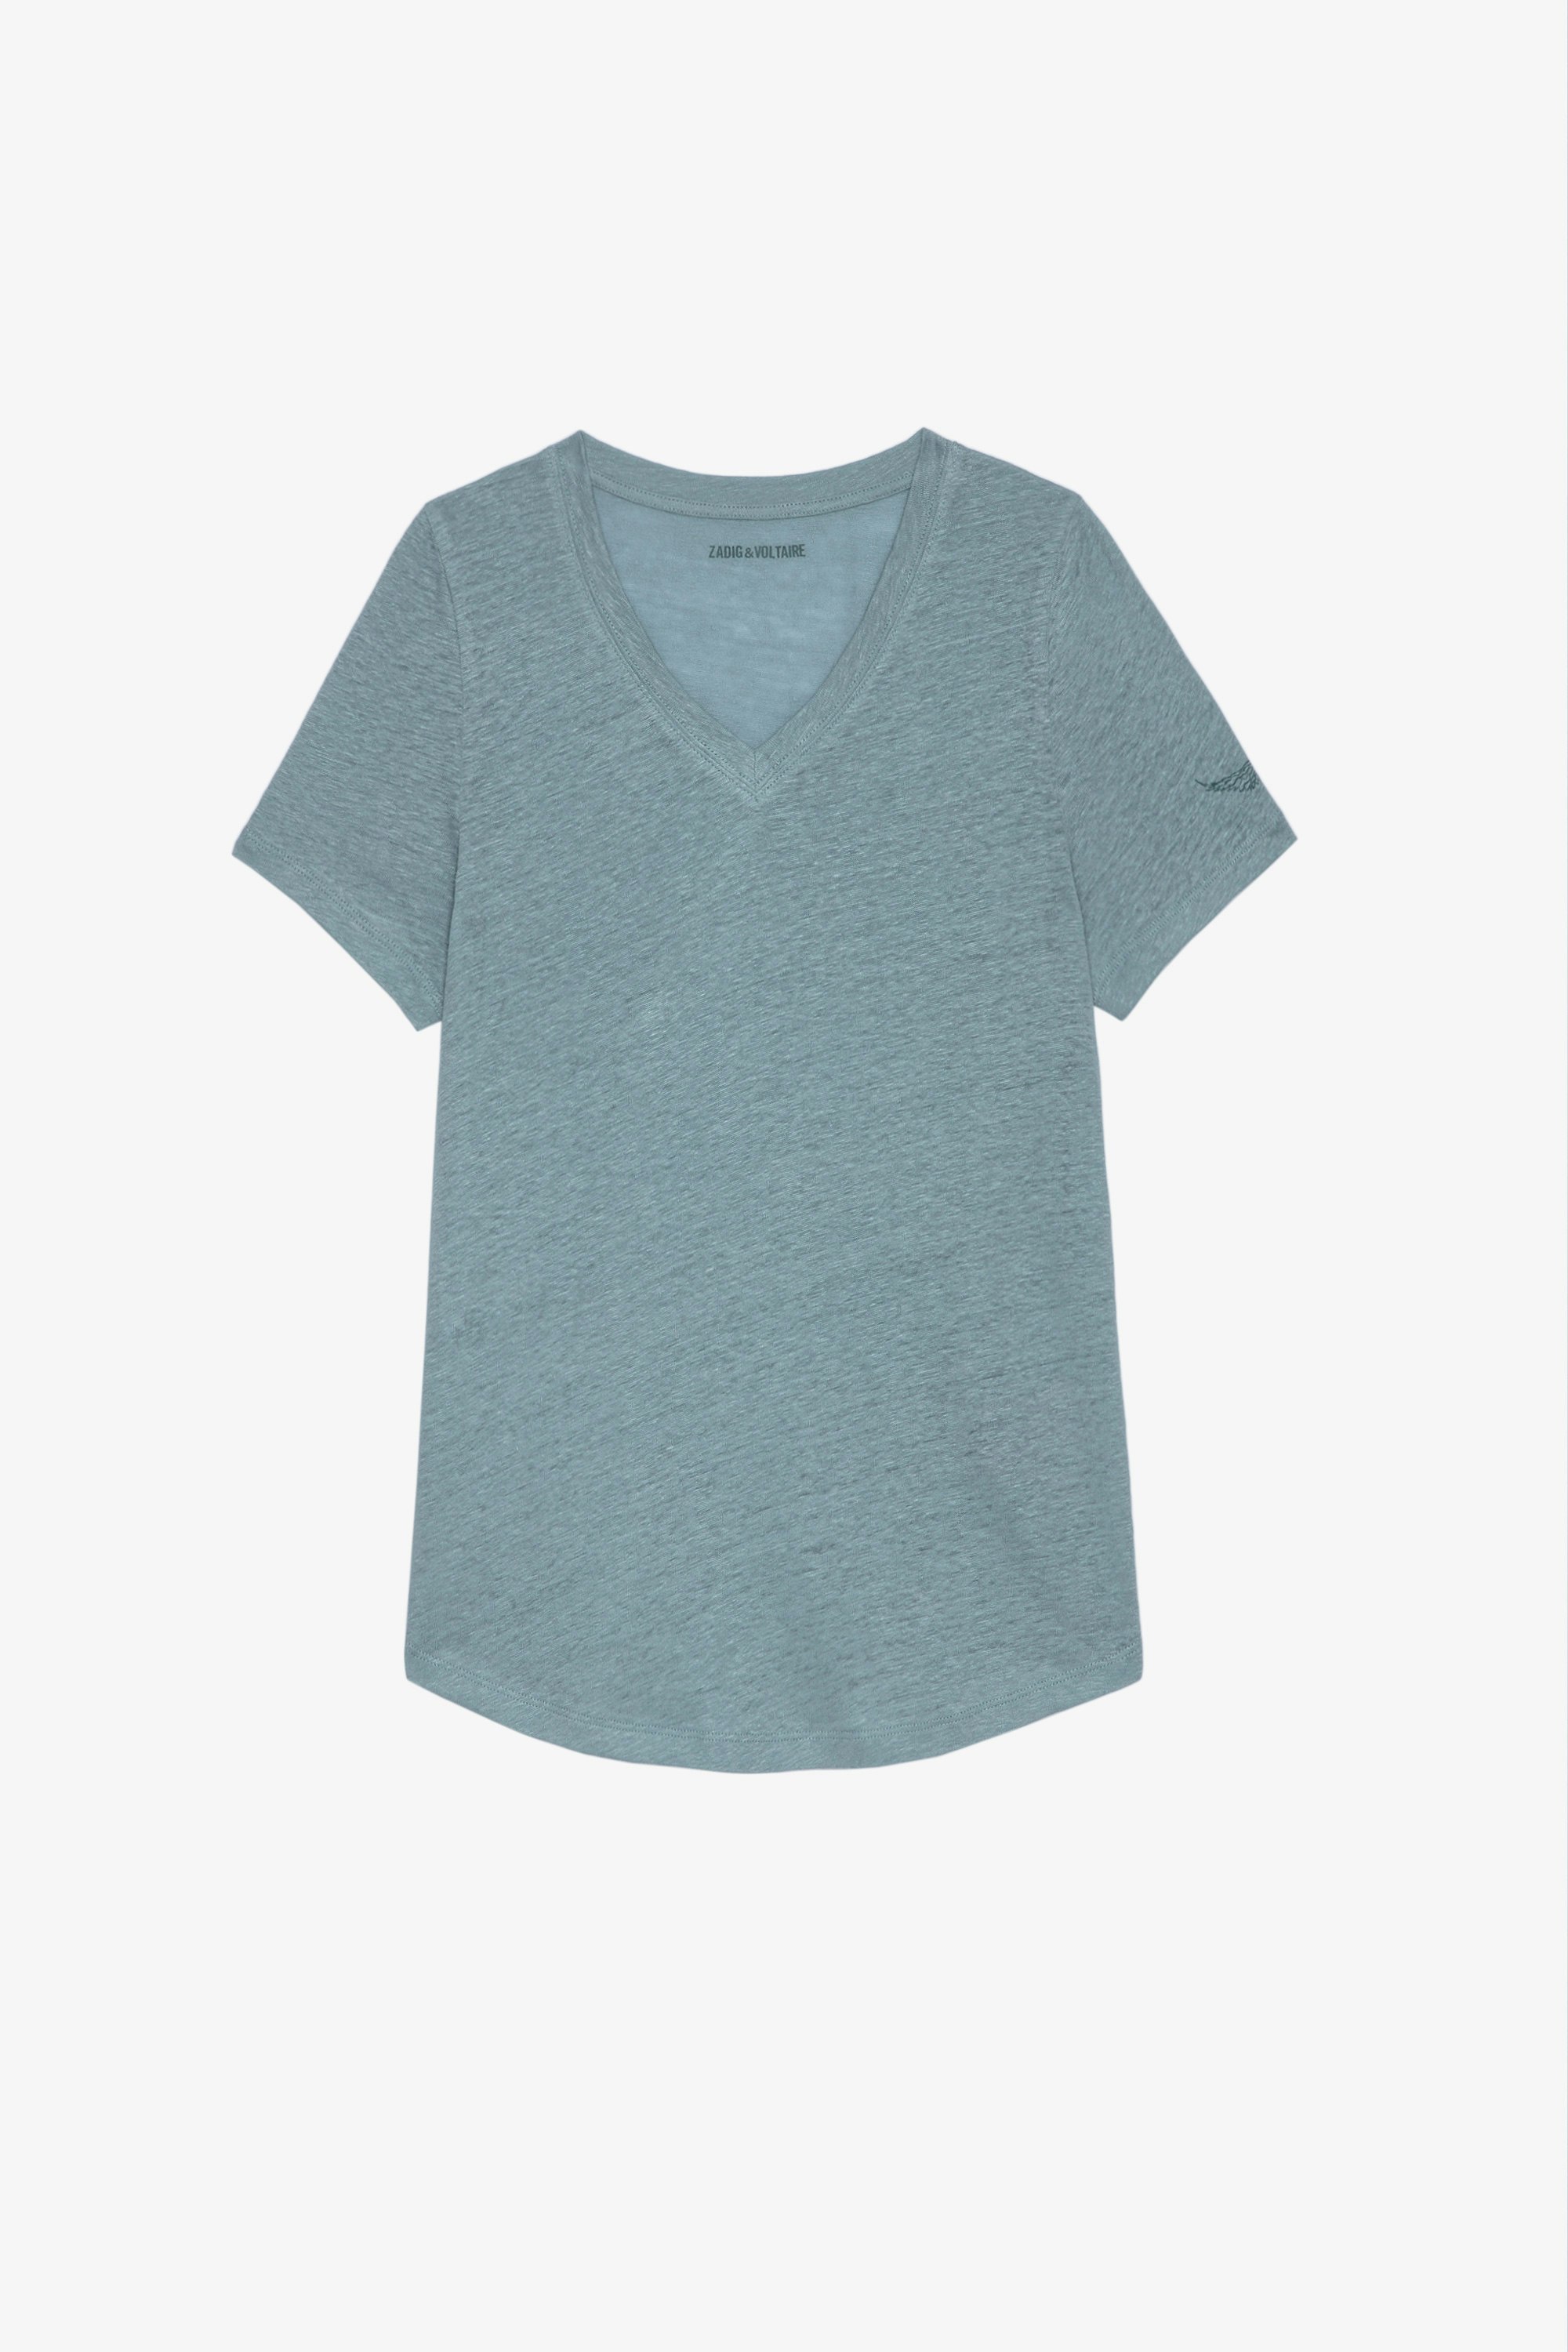 Camiseta Atia Wings Camiseta azul claro de algodón con cuello en V y manga larga para mujer